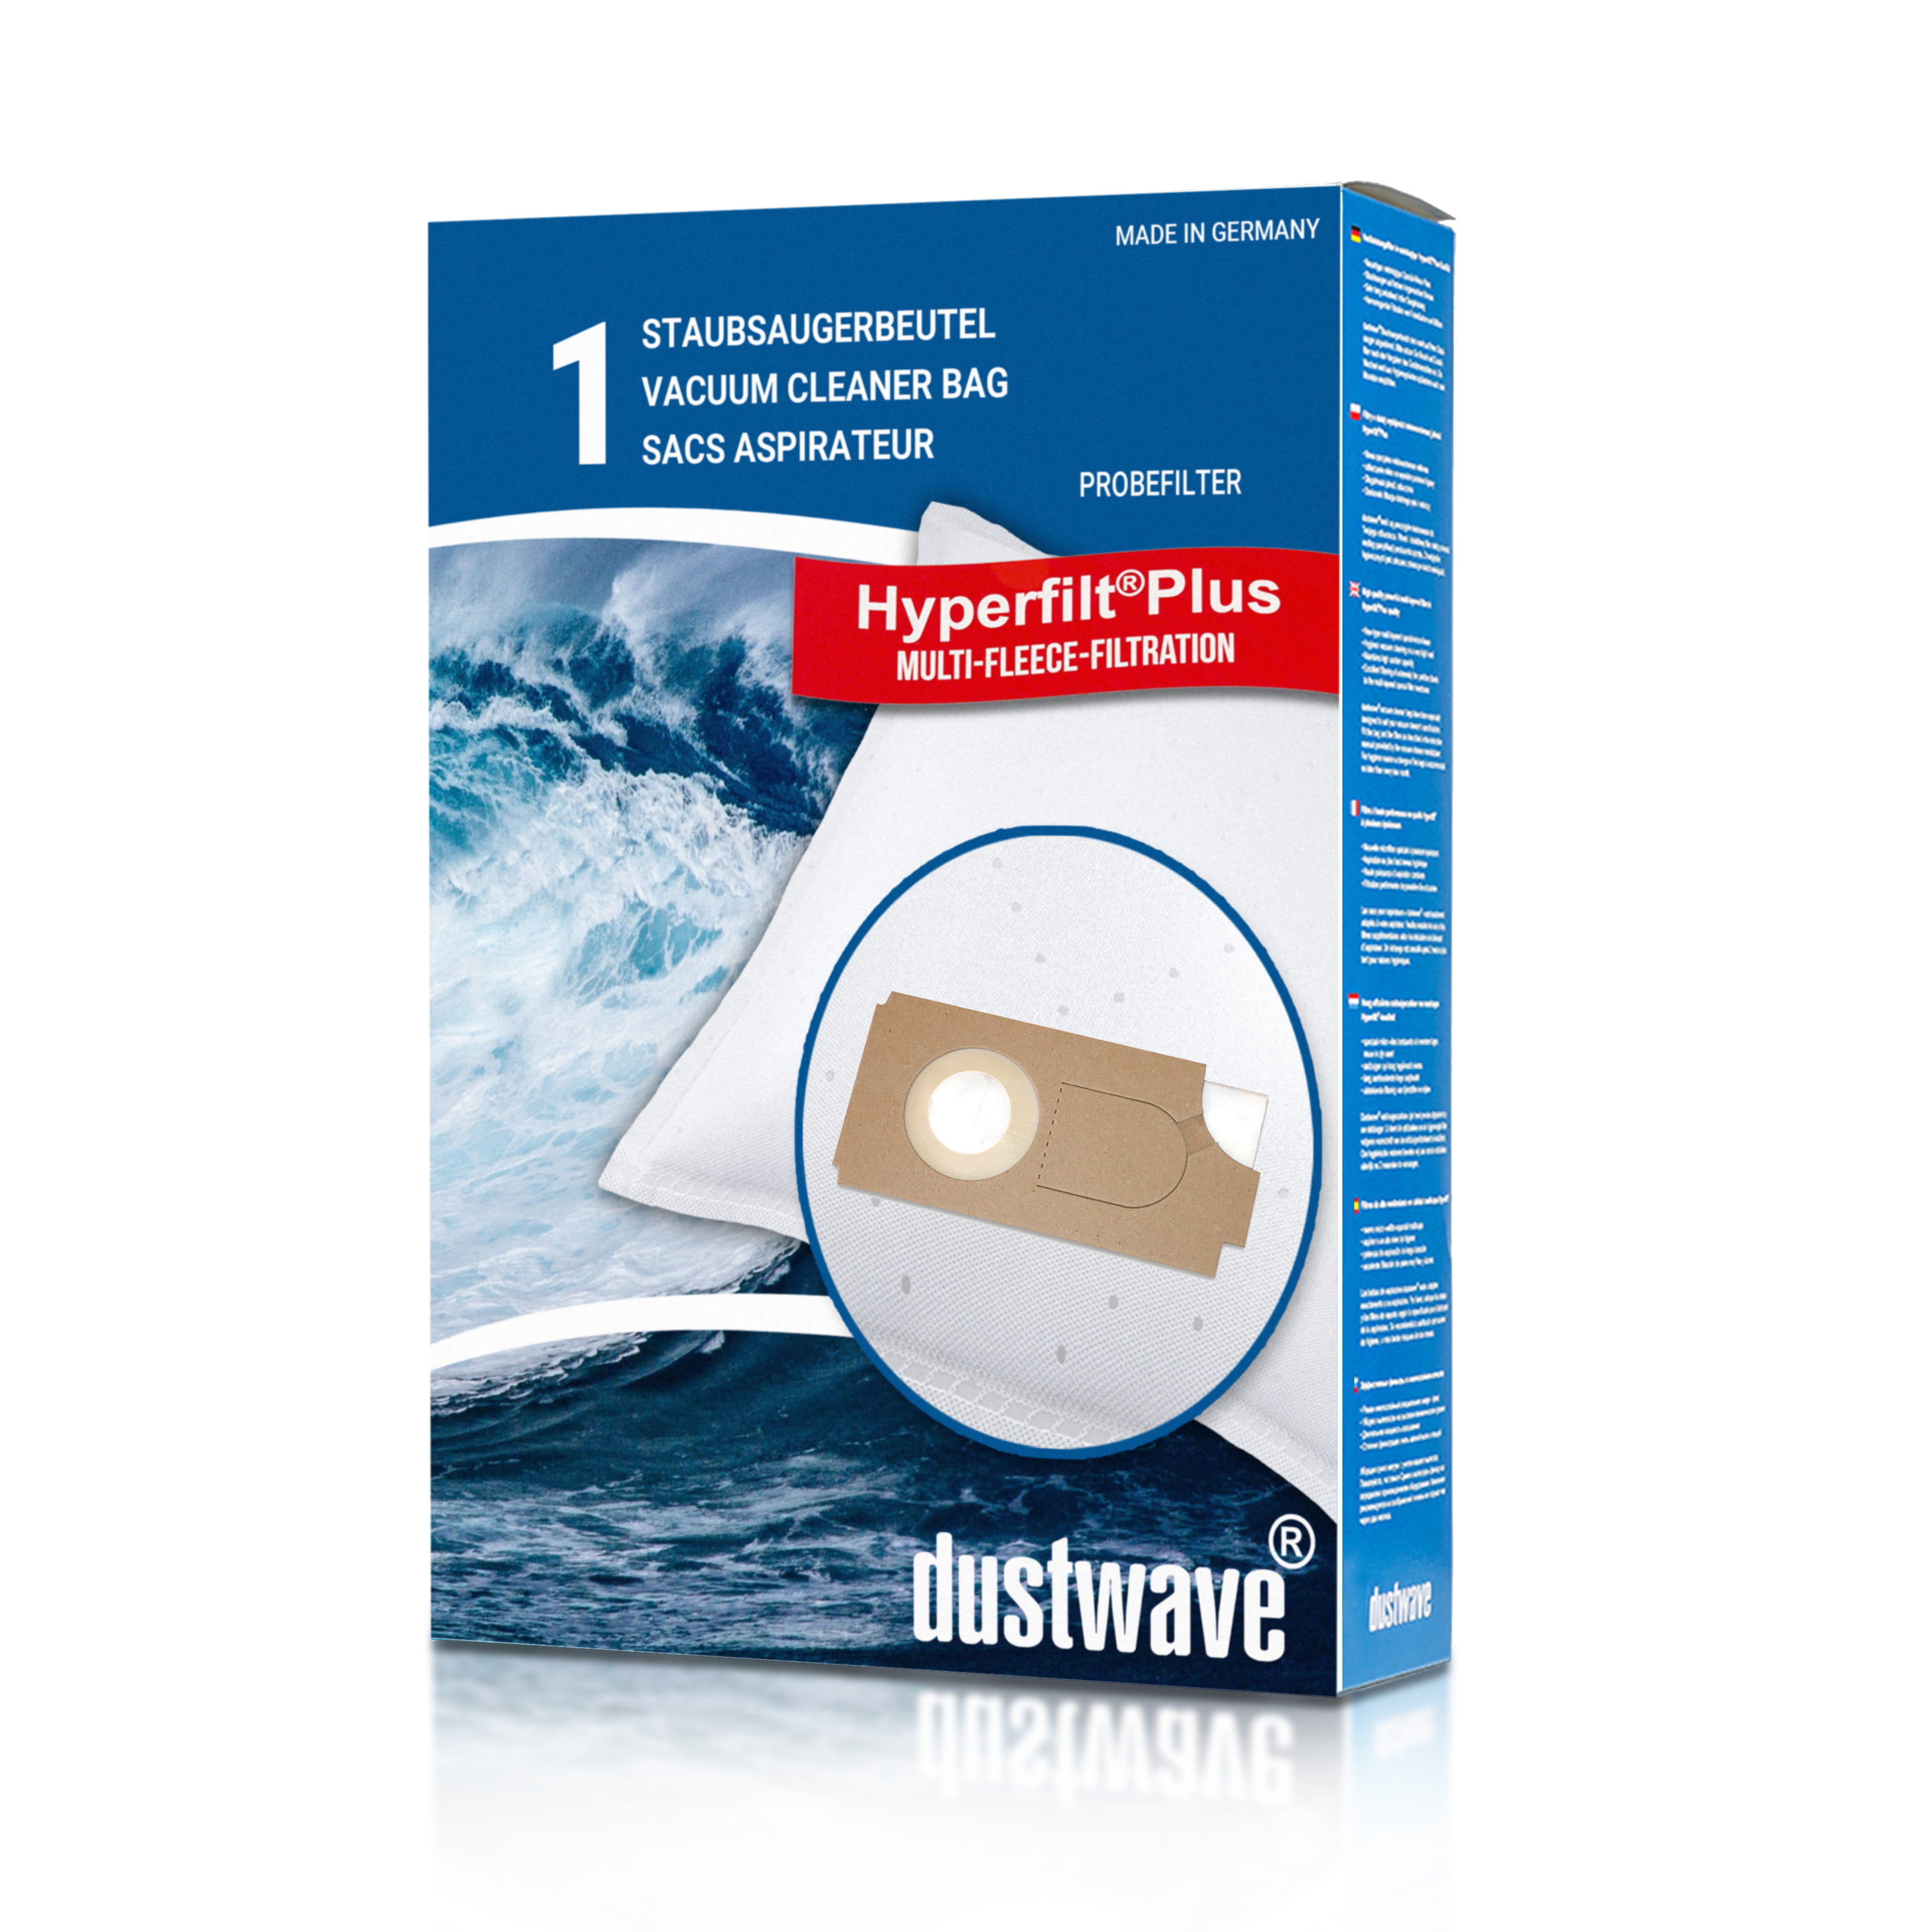 Dustwave® 1 Staubsaugerbeutel für Columbus BS 360 / BS360 - hocheffizient mit Hygieneverschluss - Made in Germany